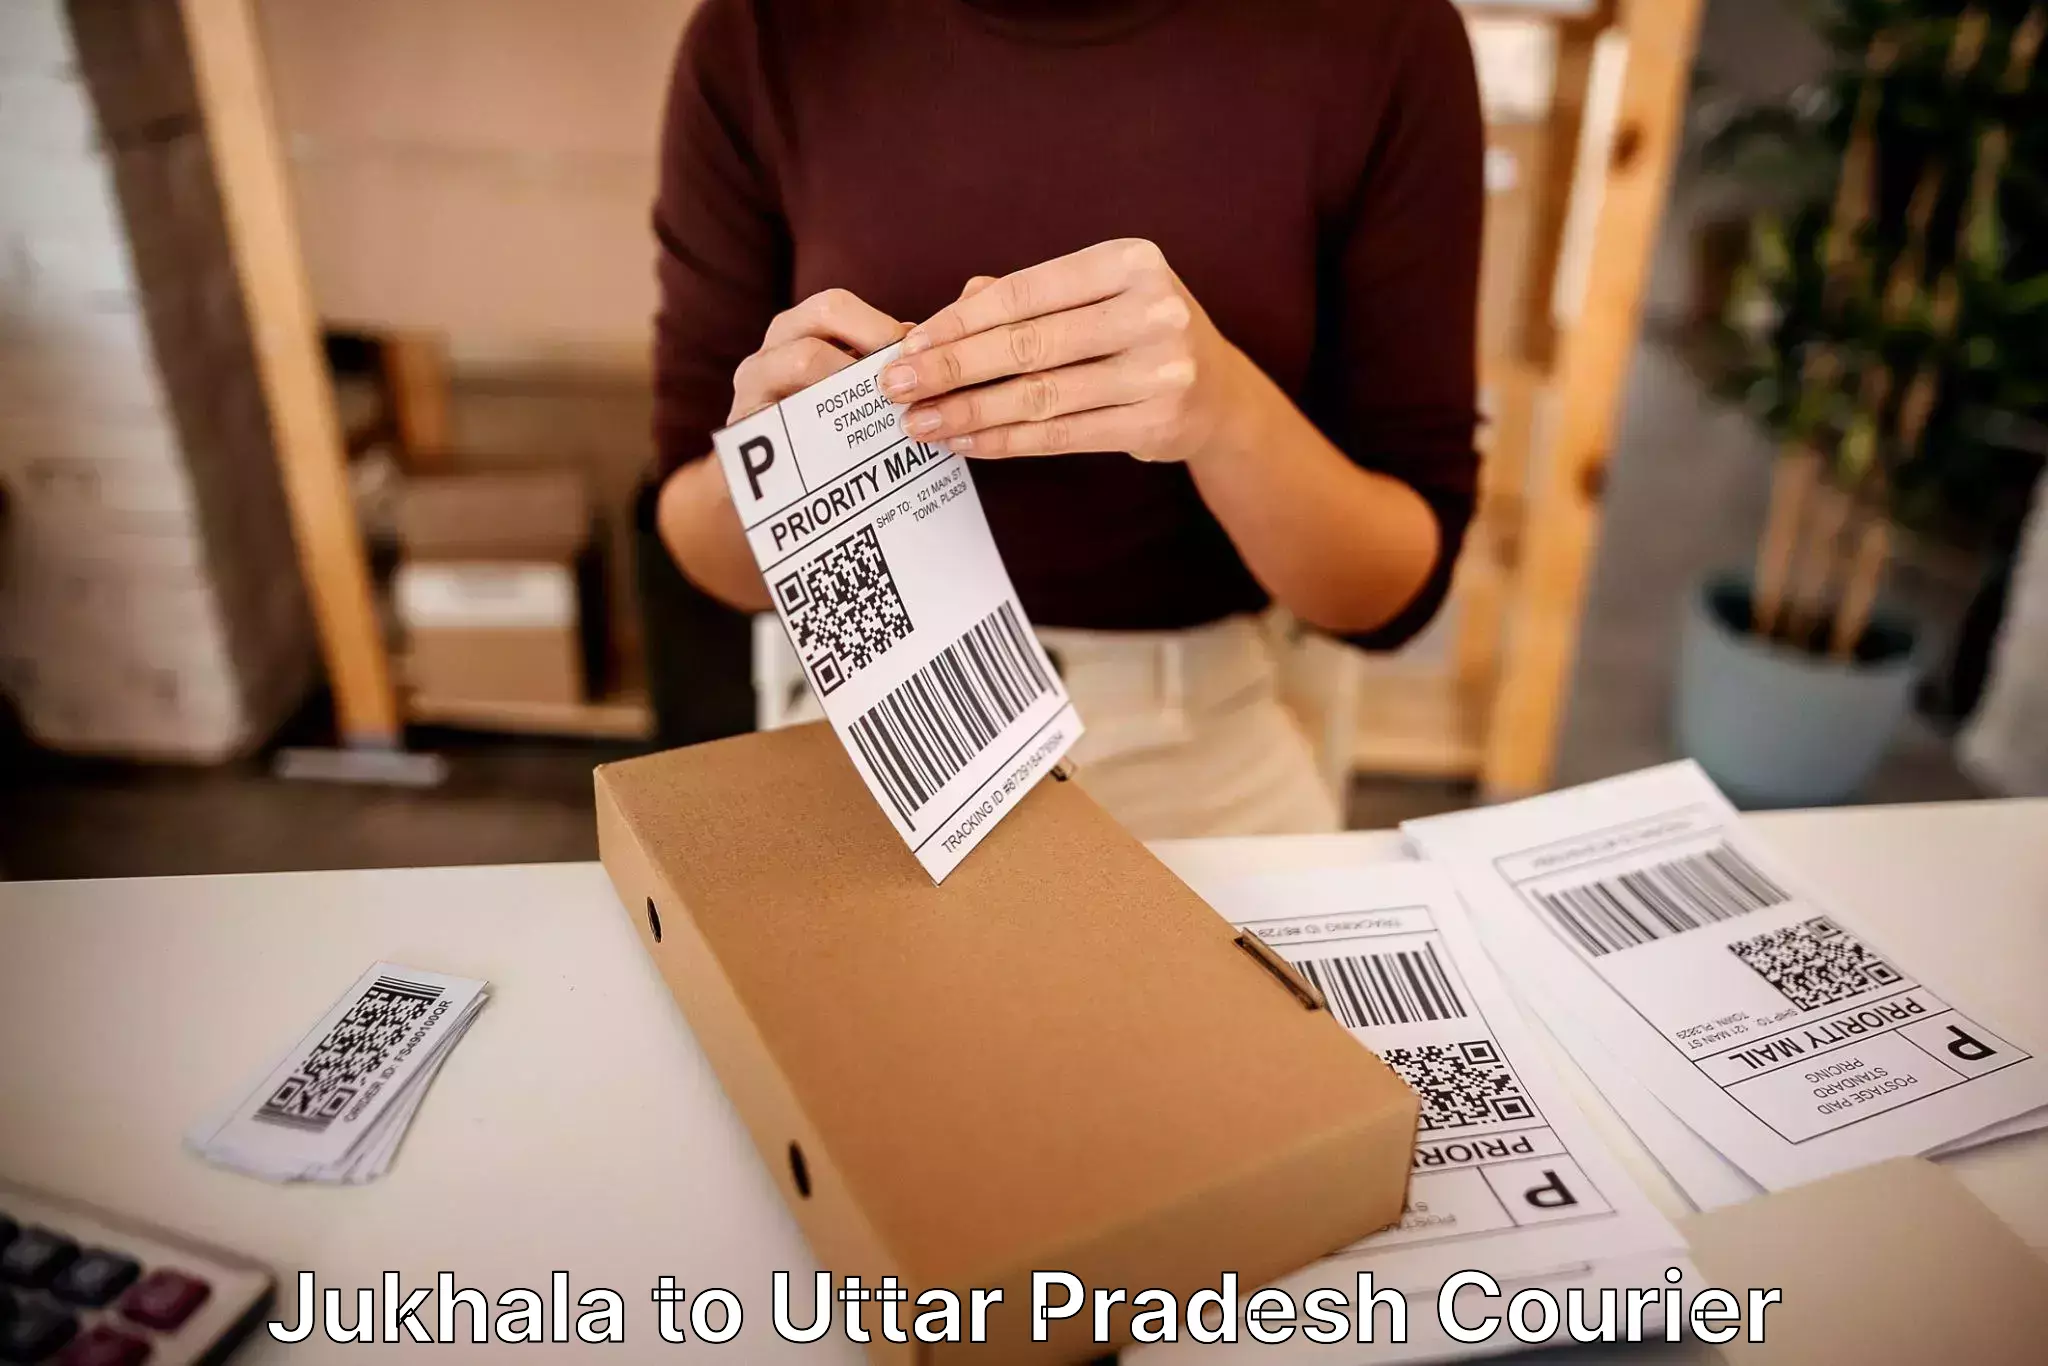 Custom moving solutions in Jukhala to Uttar Pradesh